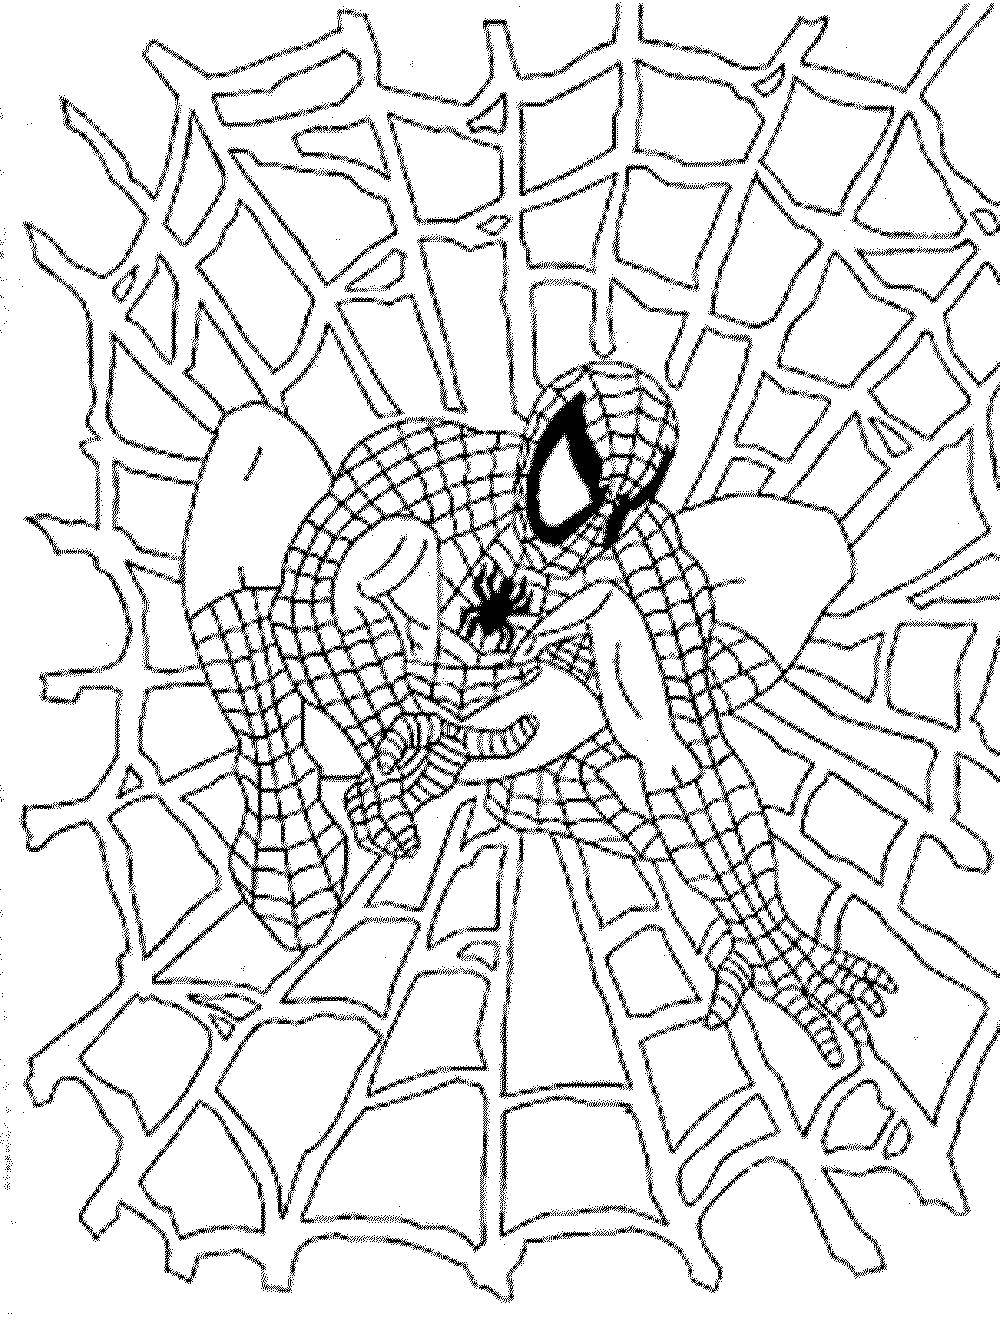 Название: Раскраска Человек паук на паутине. Категория: Персонаж из мультфильма. Теги: Персонаж из мультфильма, Человек Паук, комиксы.